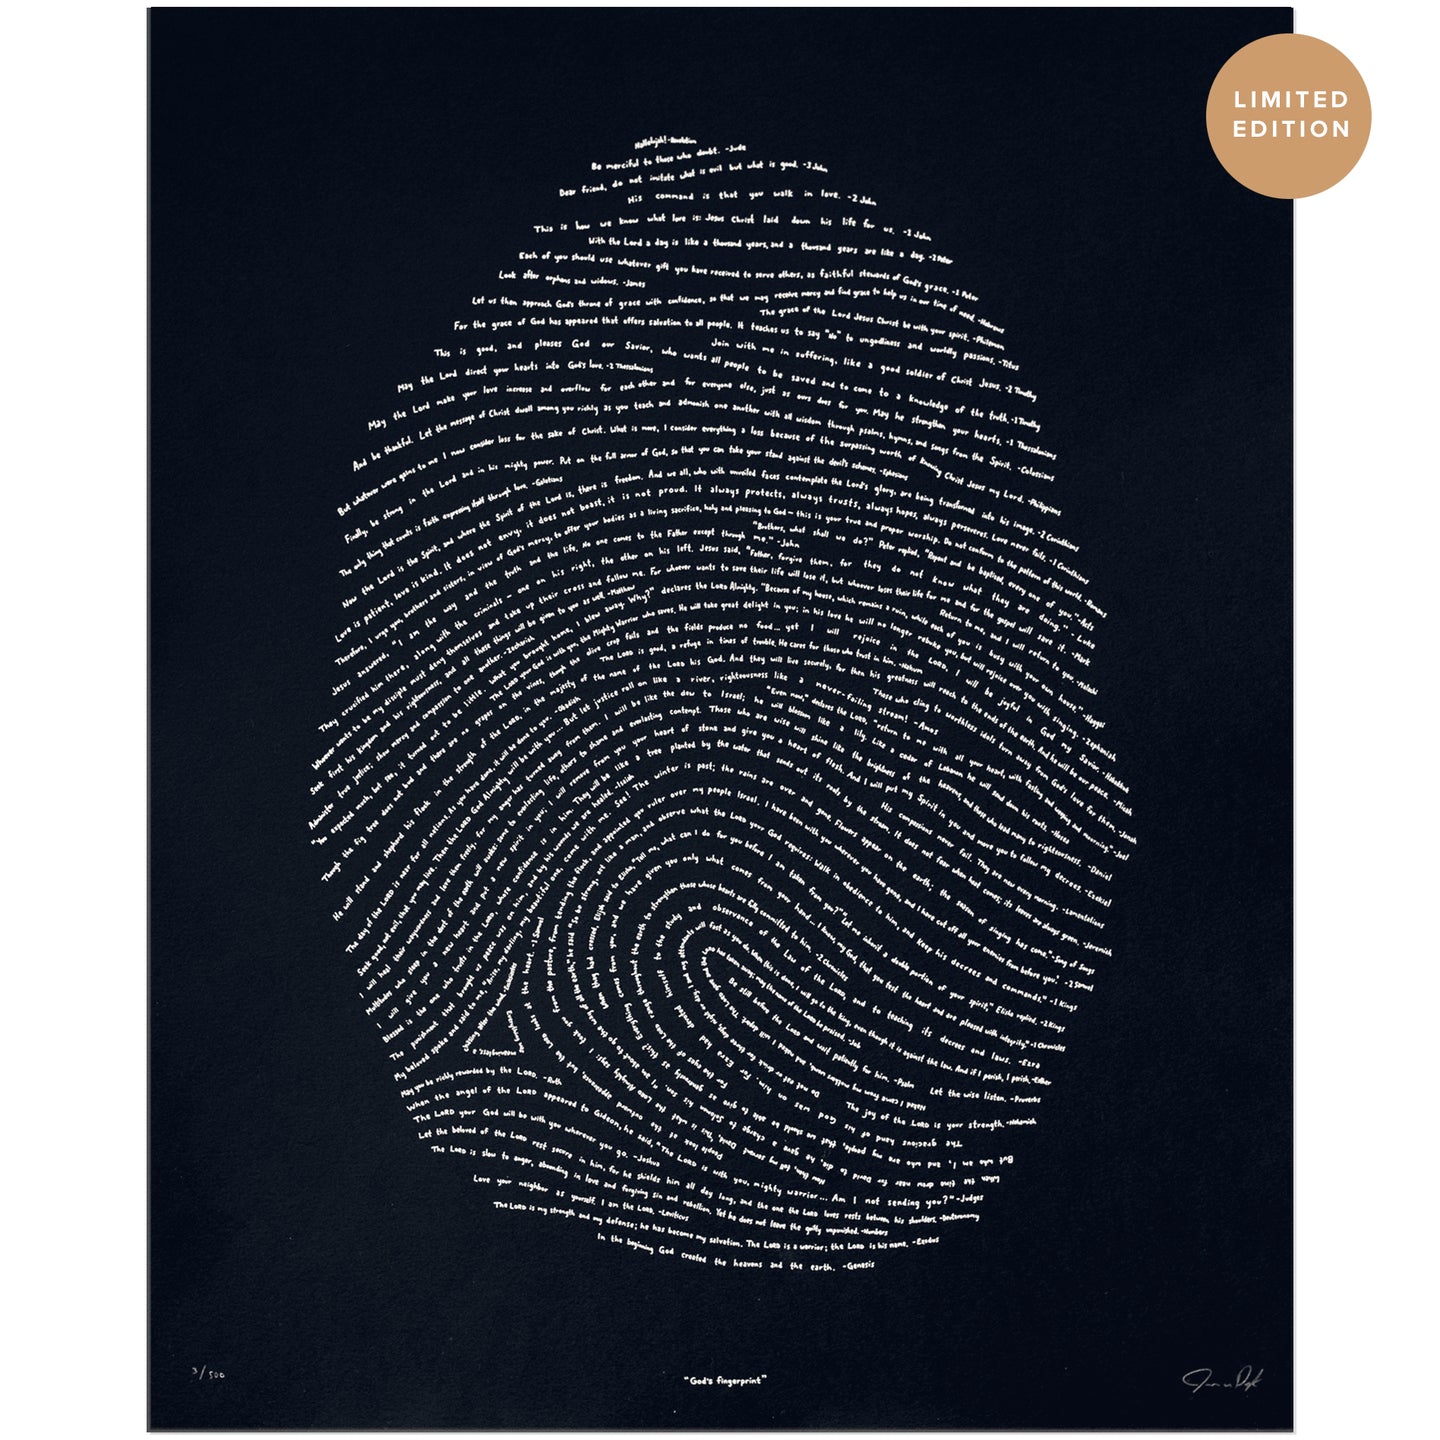 KJV Illuminated Fingerprint - Silver on Black (Limited Edition)